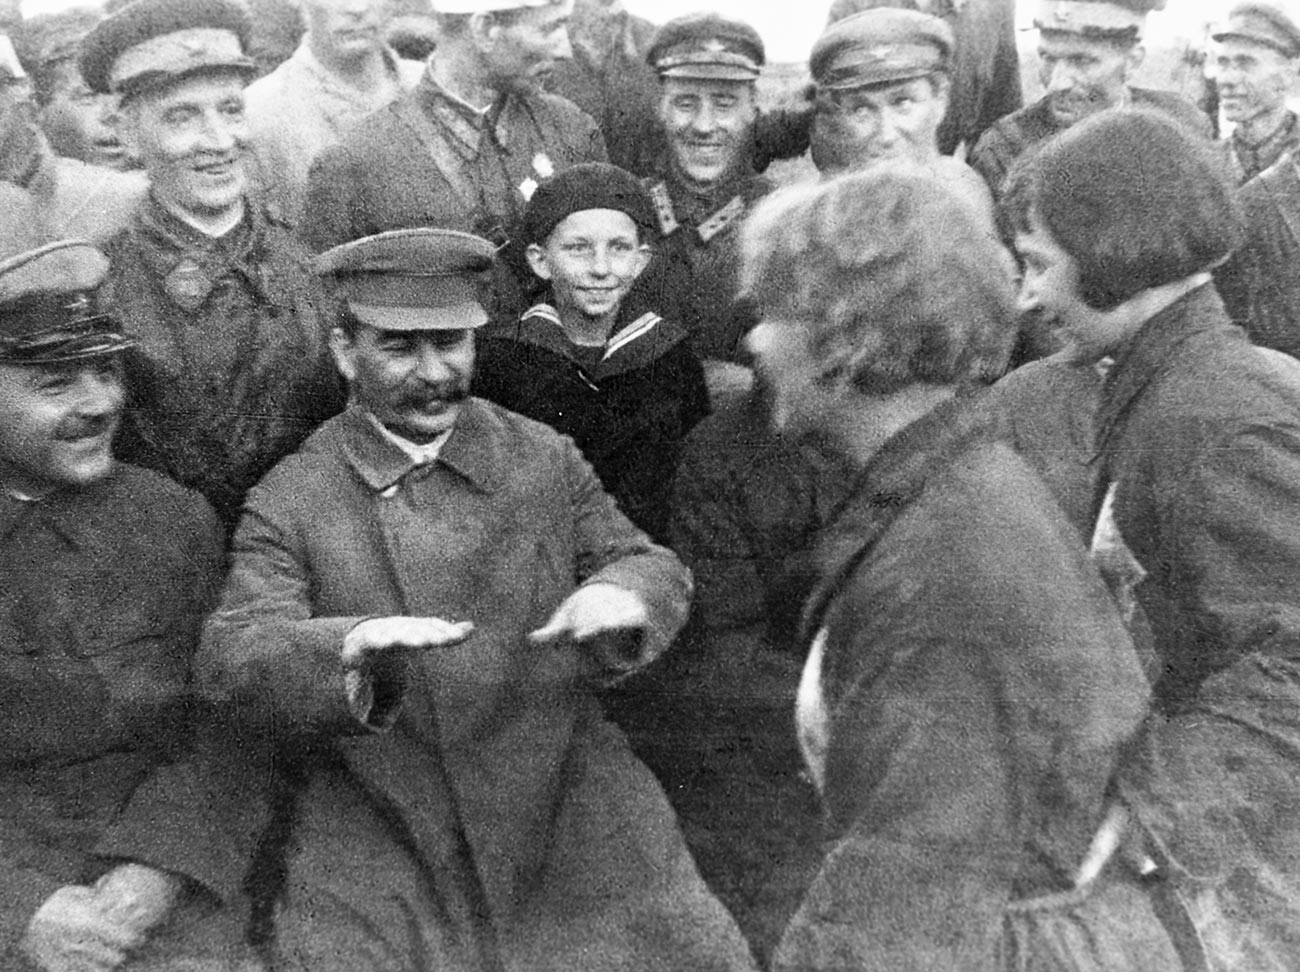 Јосиф Стаљин и Климент Ворошилов разговарају са пилотима и падобранцима. Аеродром Тушино.